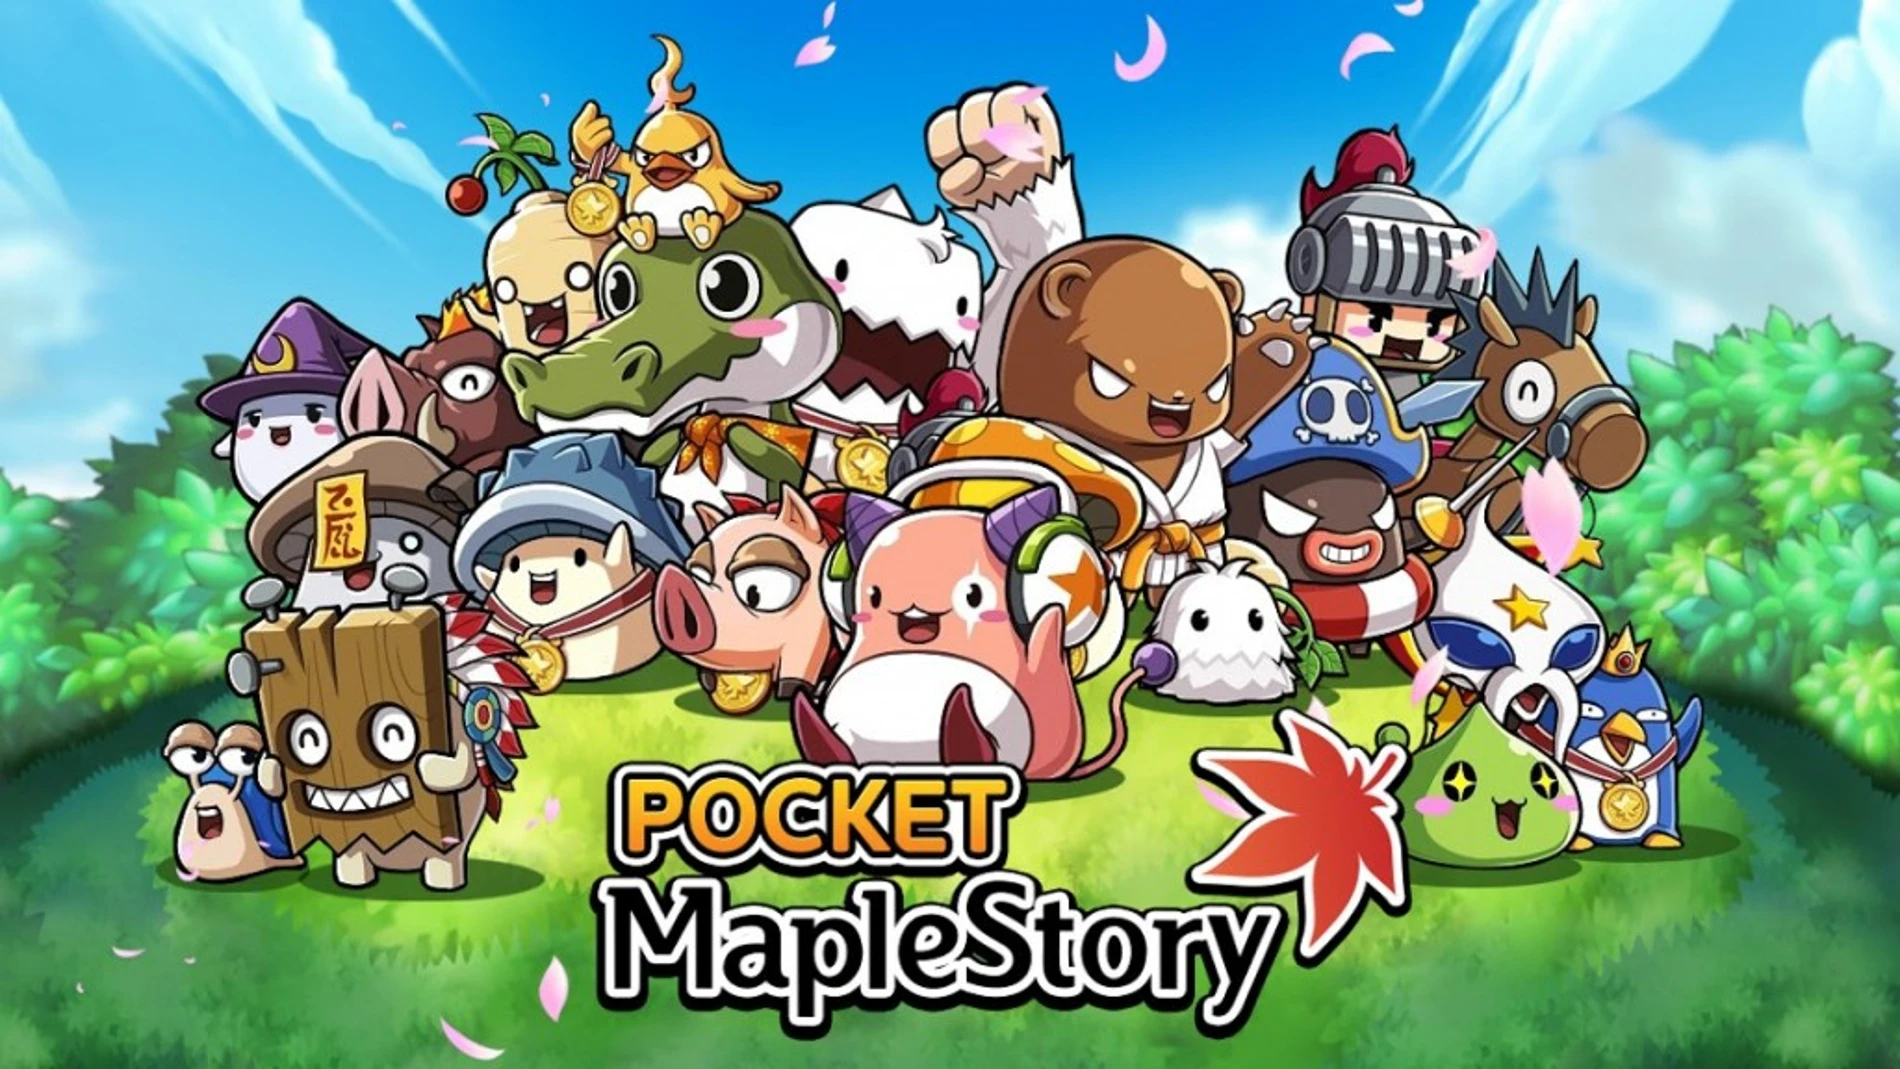 MapleStory aterriza en iOS y Android